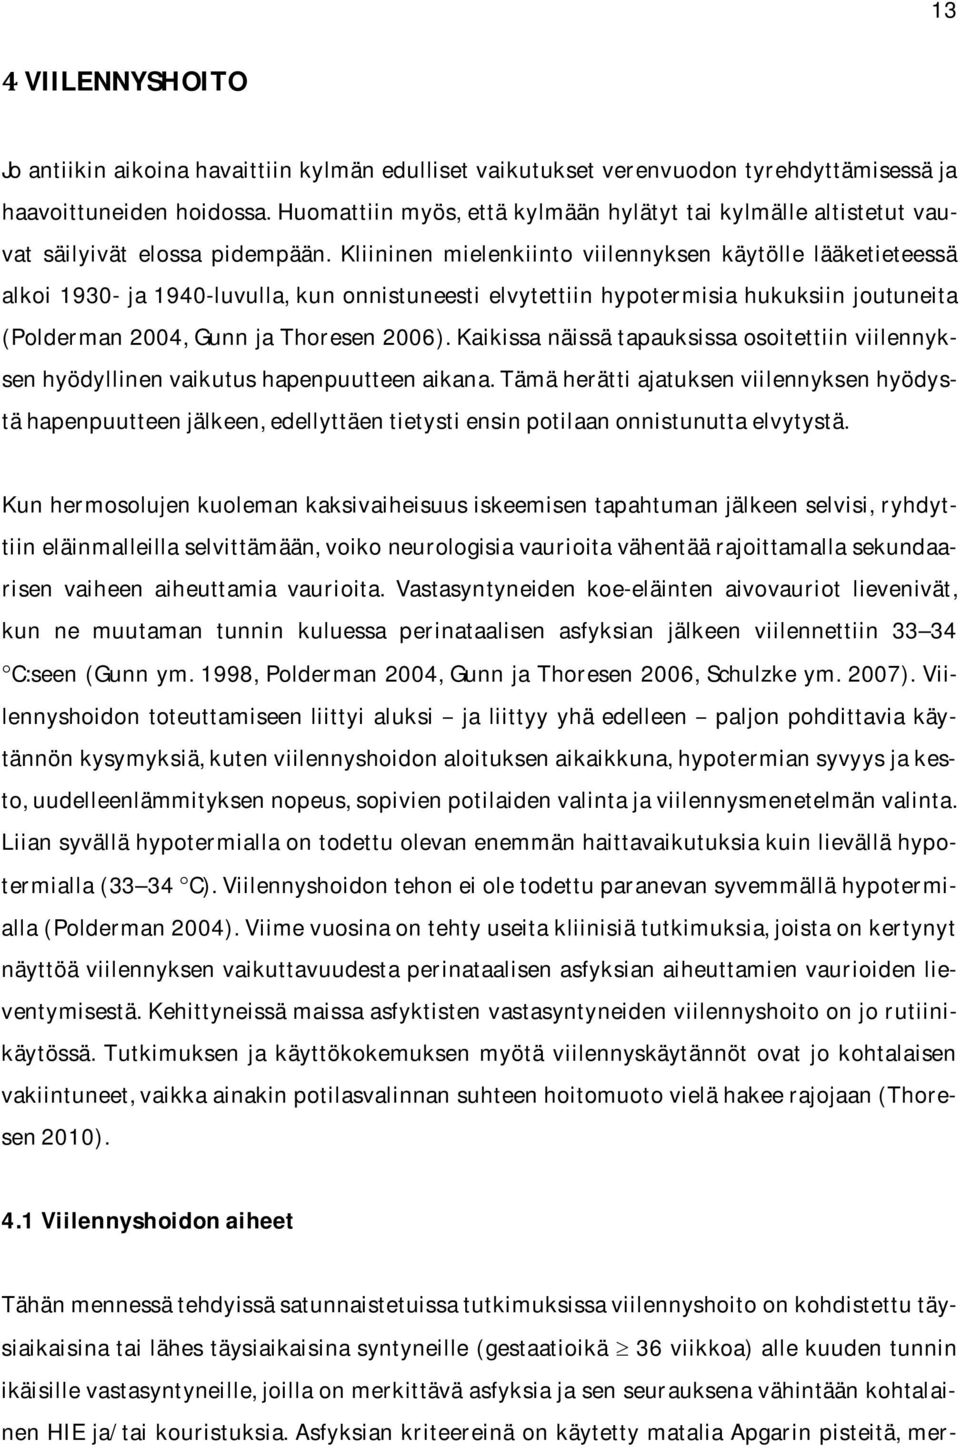 Kliininen mielenkiinto viilennyksen käytölle lääketieteessä alkoi1930-ja1940-luvulla,kunonnistuneesti elvytettiinhypotermisiahukuksiinjoutuneita (Polderman2004,GunnjaThoresen2006).